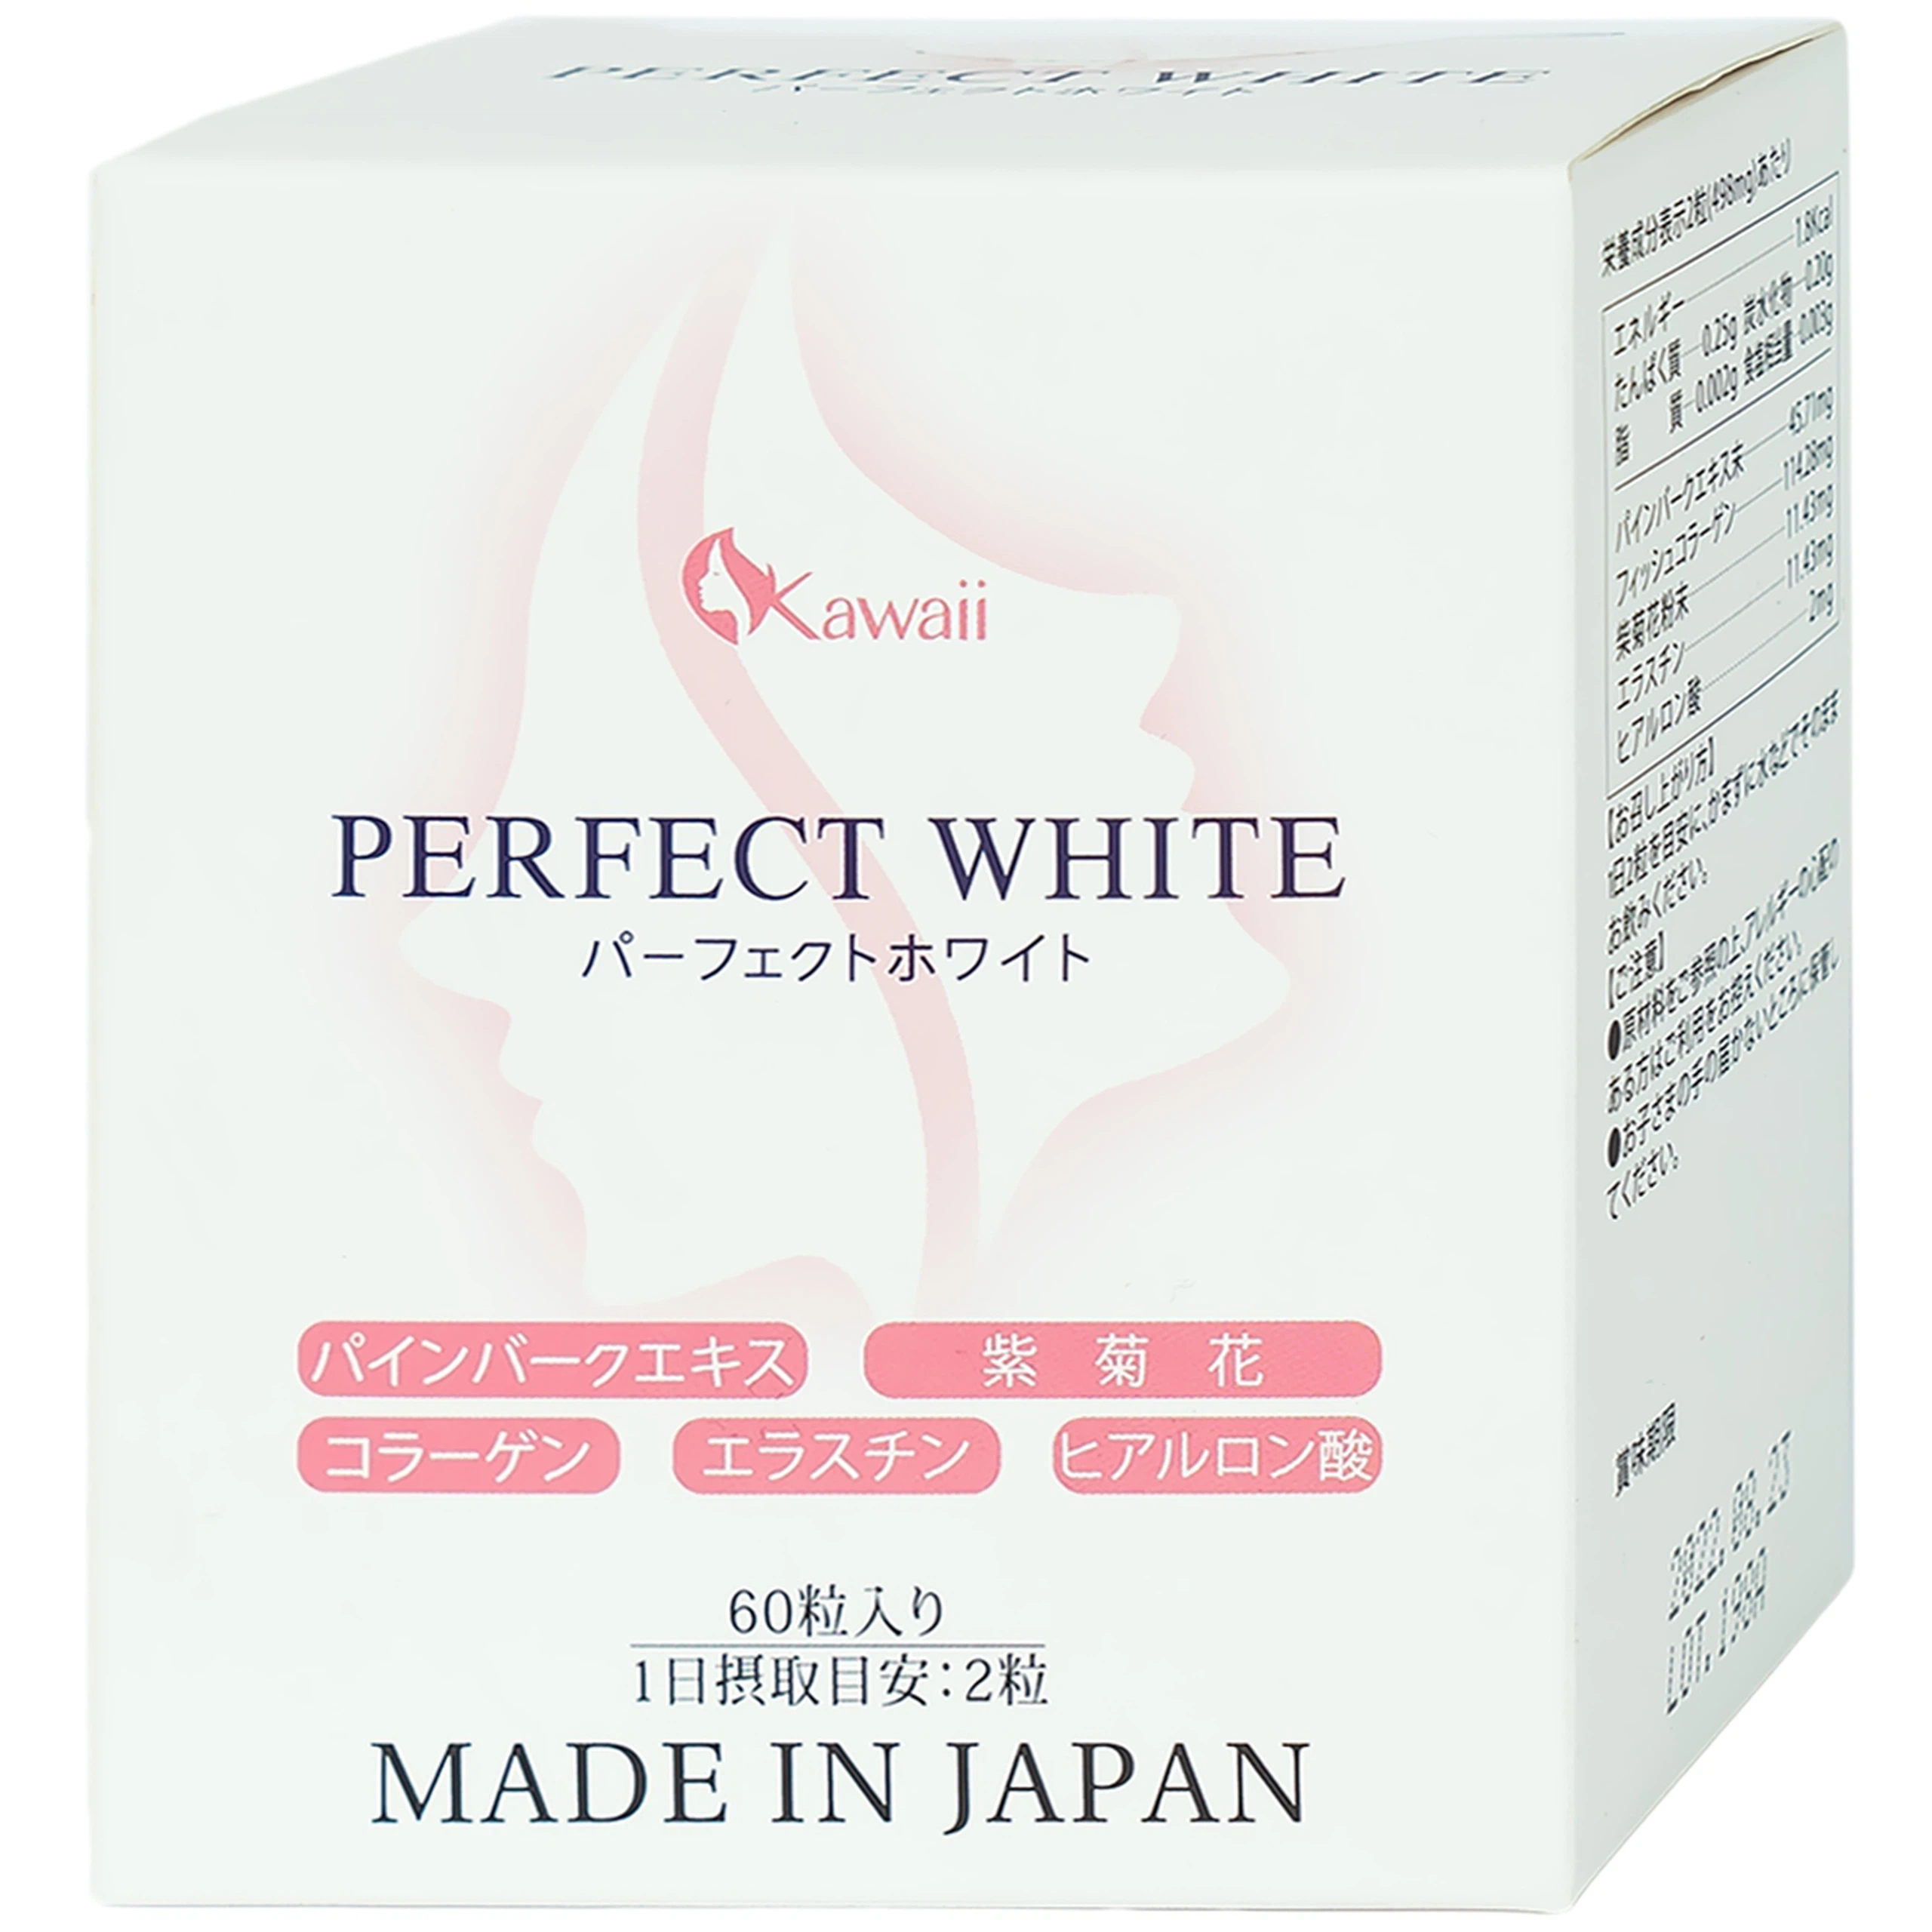 Viên uống Perfect White Jpanwell hỗ trợ làm đẹp da, giúp da trắng sáng (60 viên)